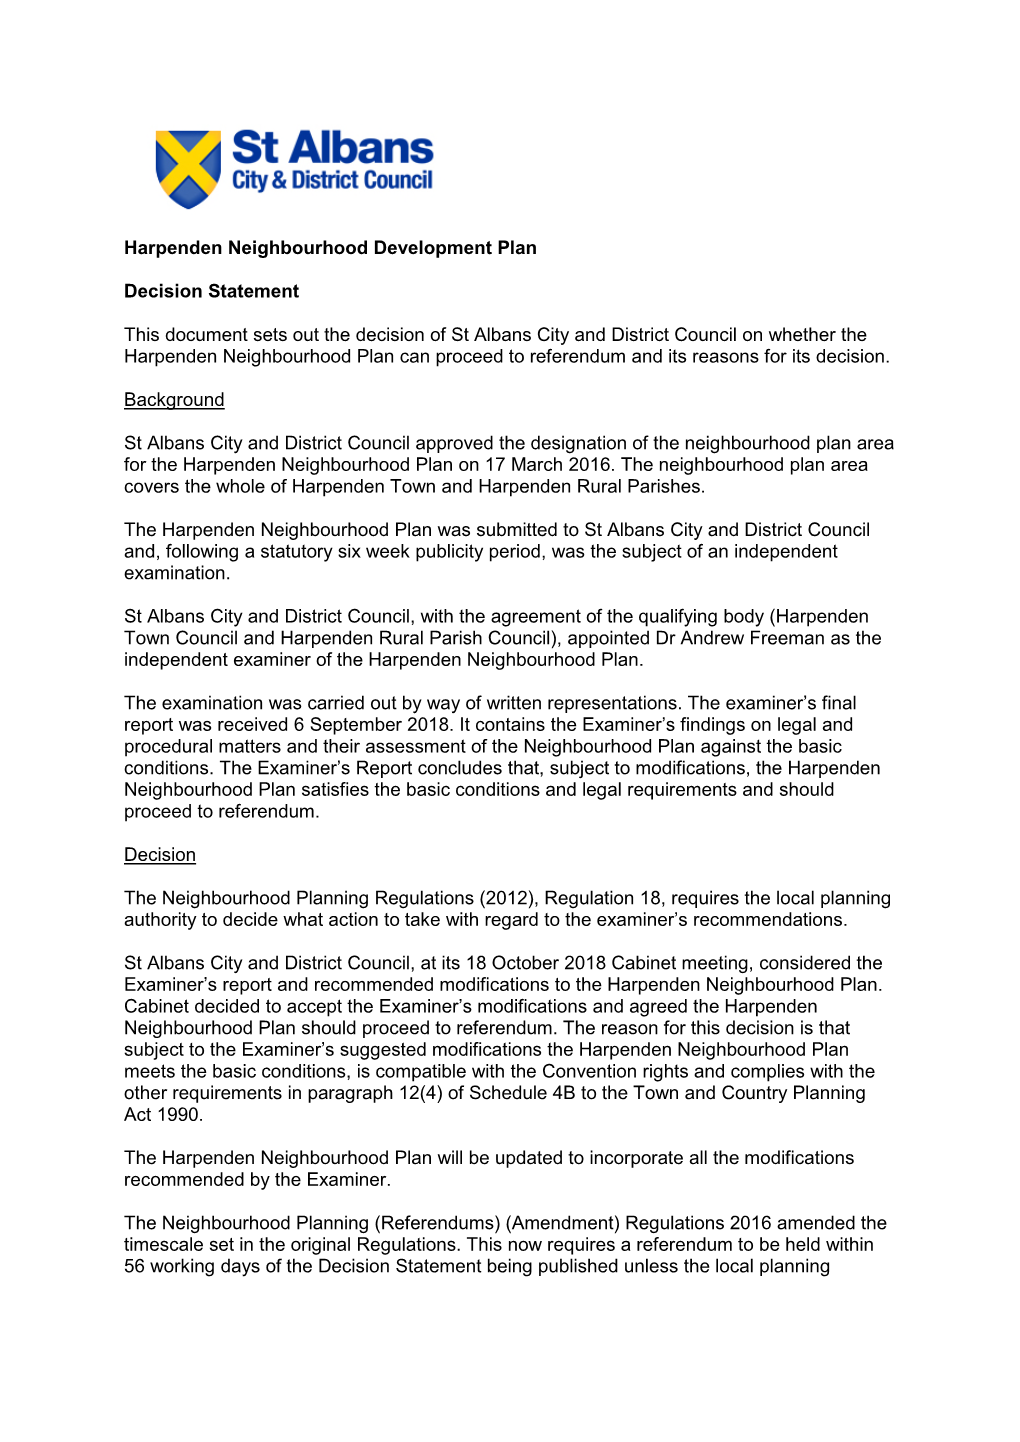 HNP 003 Harpenden Neighbourhood Plan Decision Statement Nov 2018